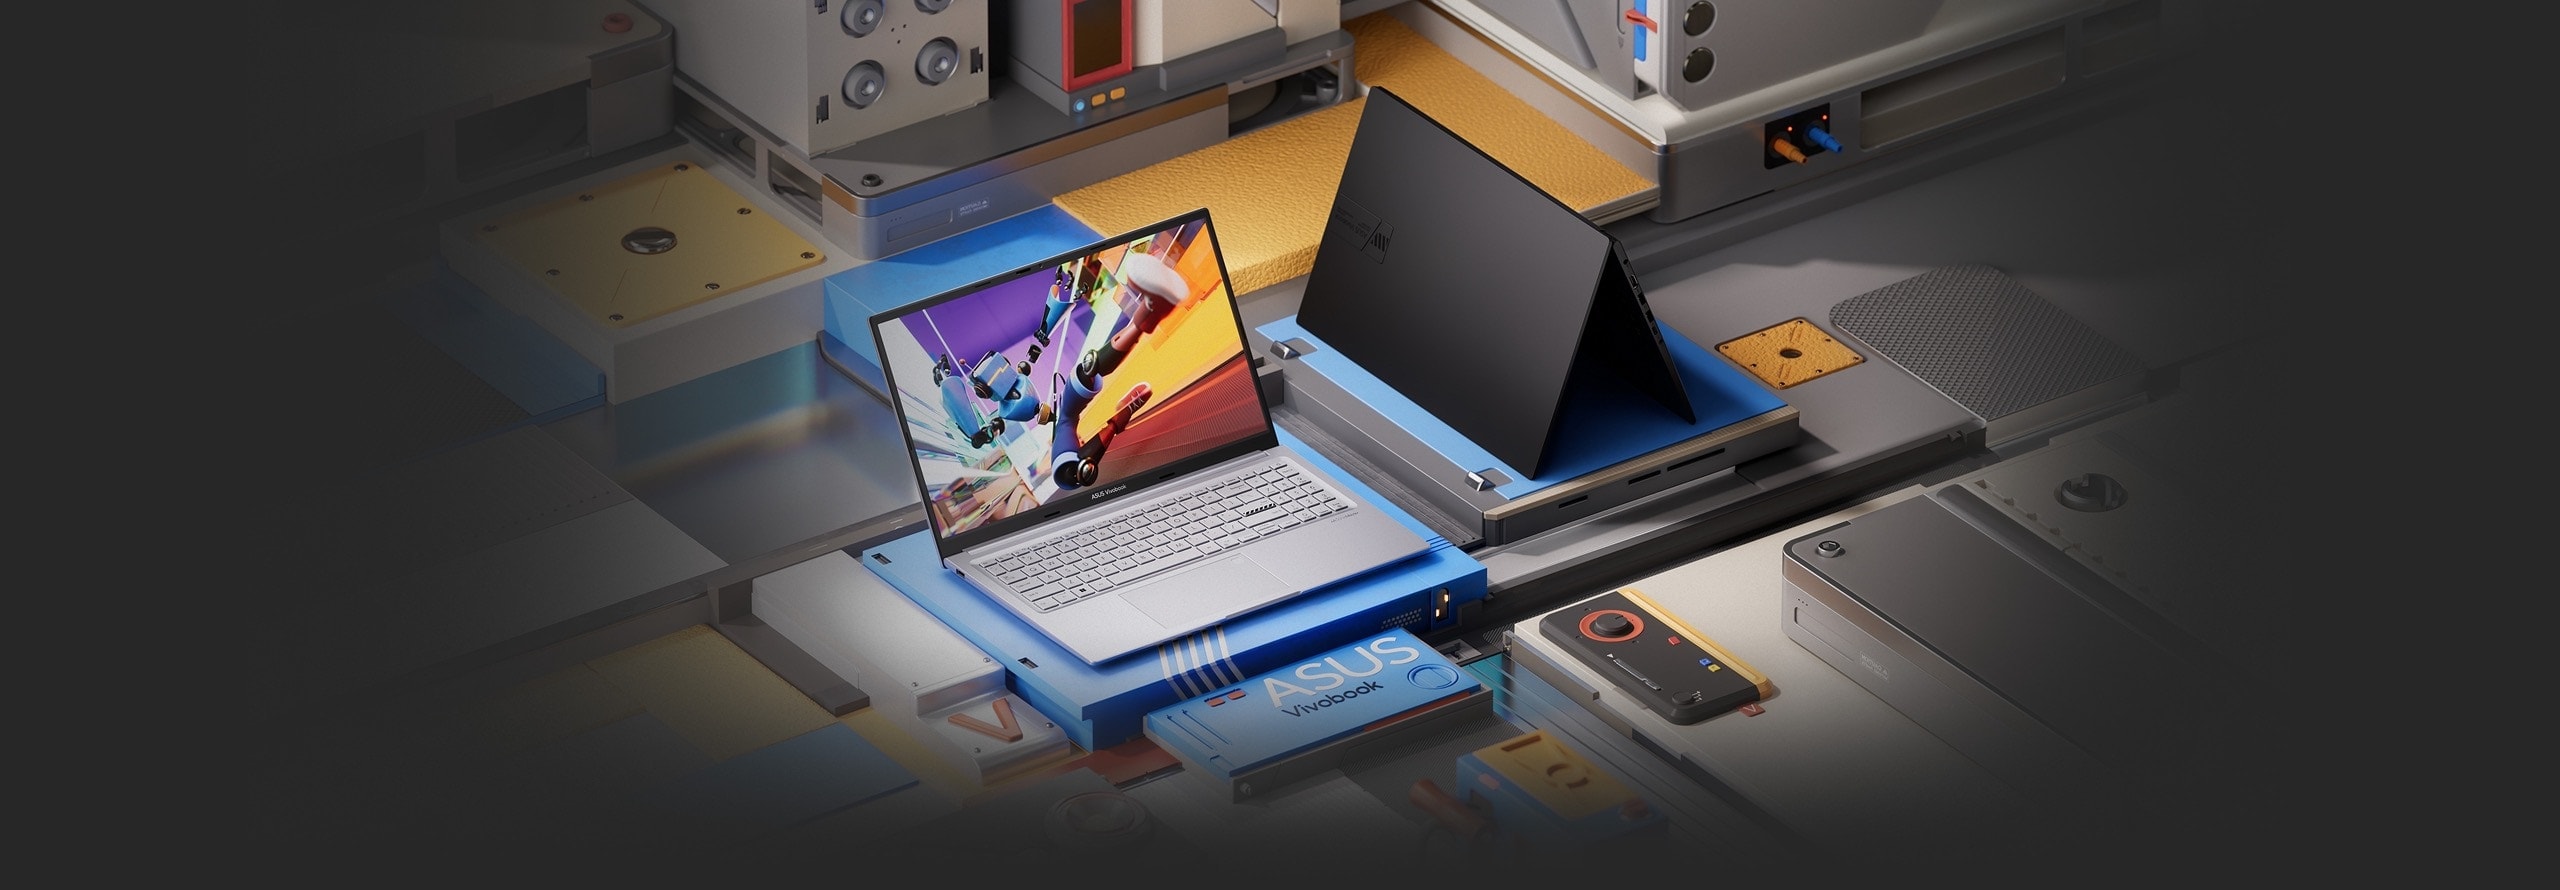 Notebook ASUS Vivobook 15X OLED com tela ASUS Lumina OLED de 15 polegadas FHD com cores vivas e o poder do processador Intel Core 12ª geração. Experiência visual excepcional em um notebook poderoso!